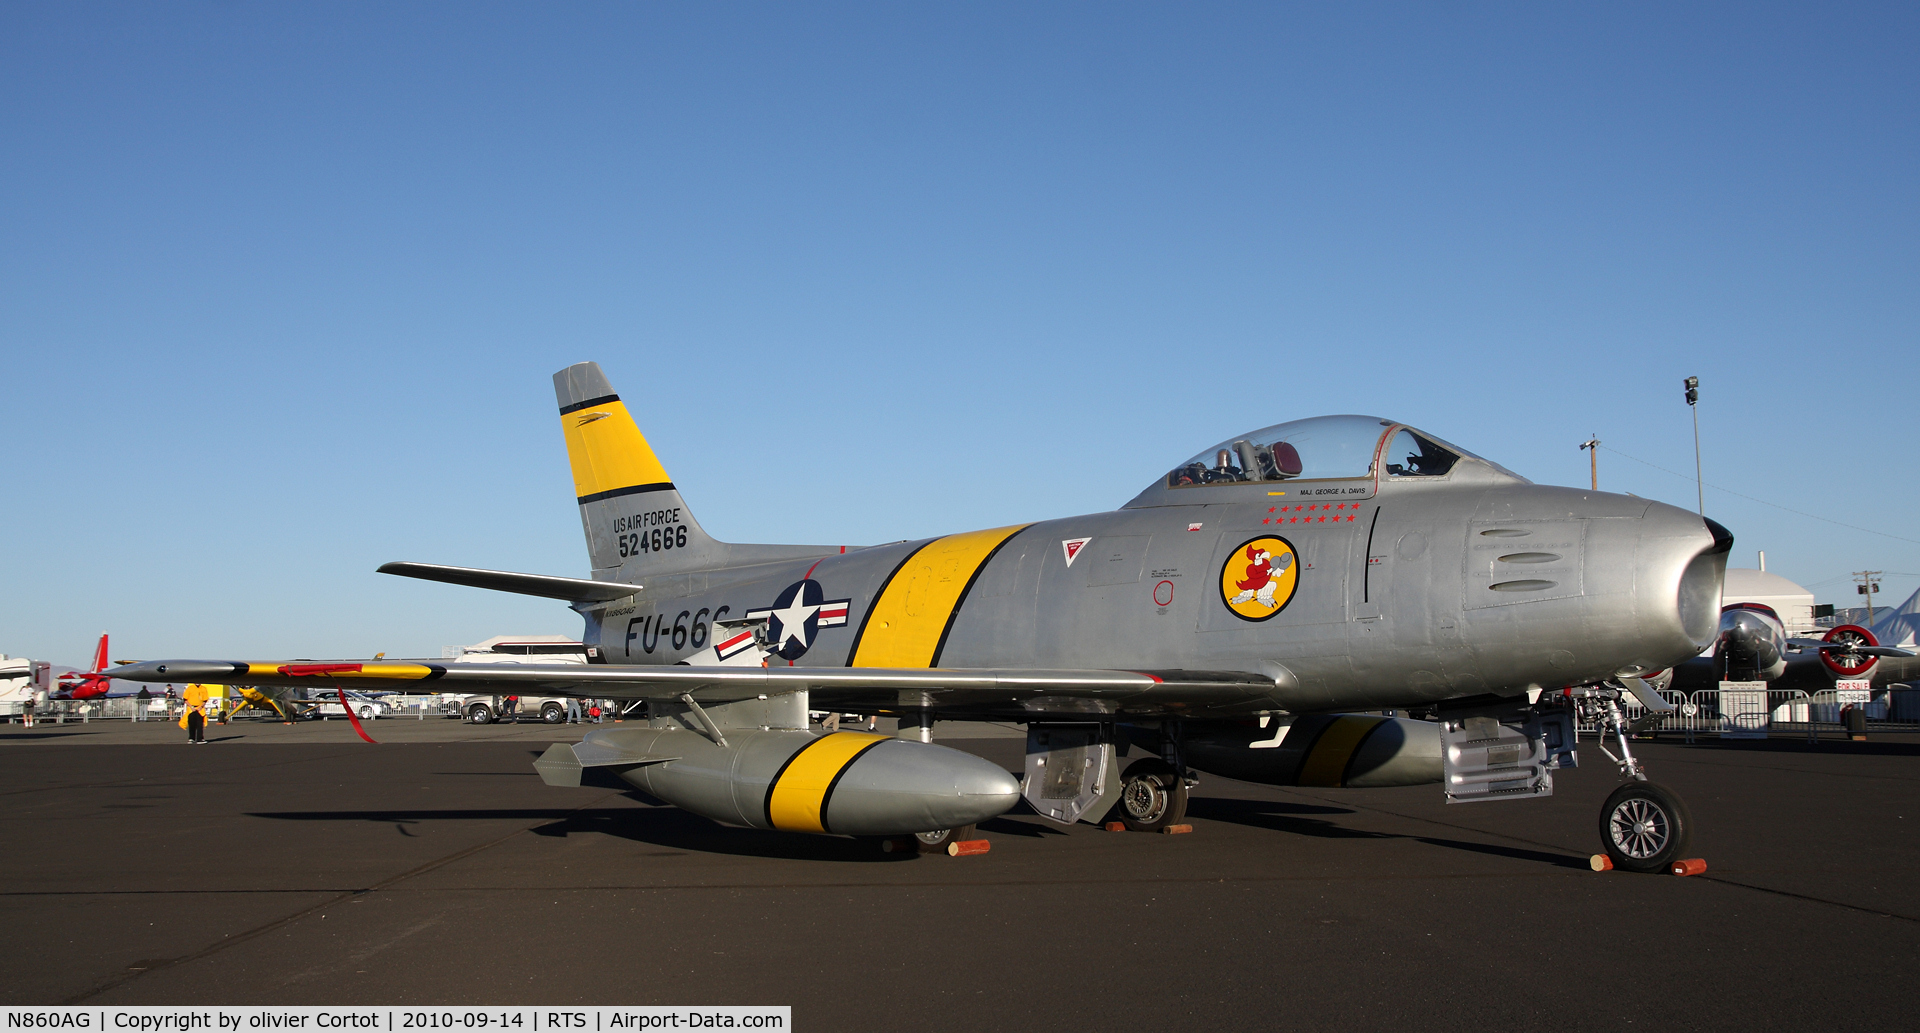 N860AG, 1952 North American F-86F Sabre C/N 191-362 (52-4666), Reno Air races 2010